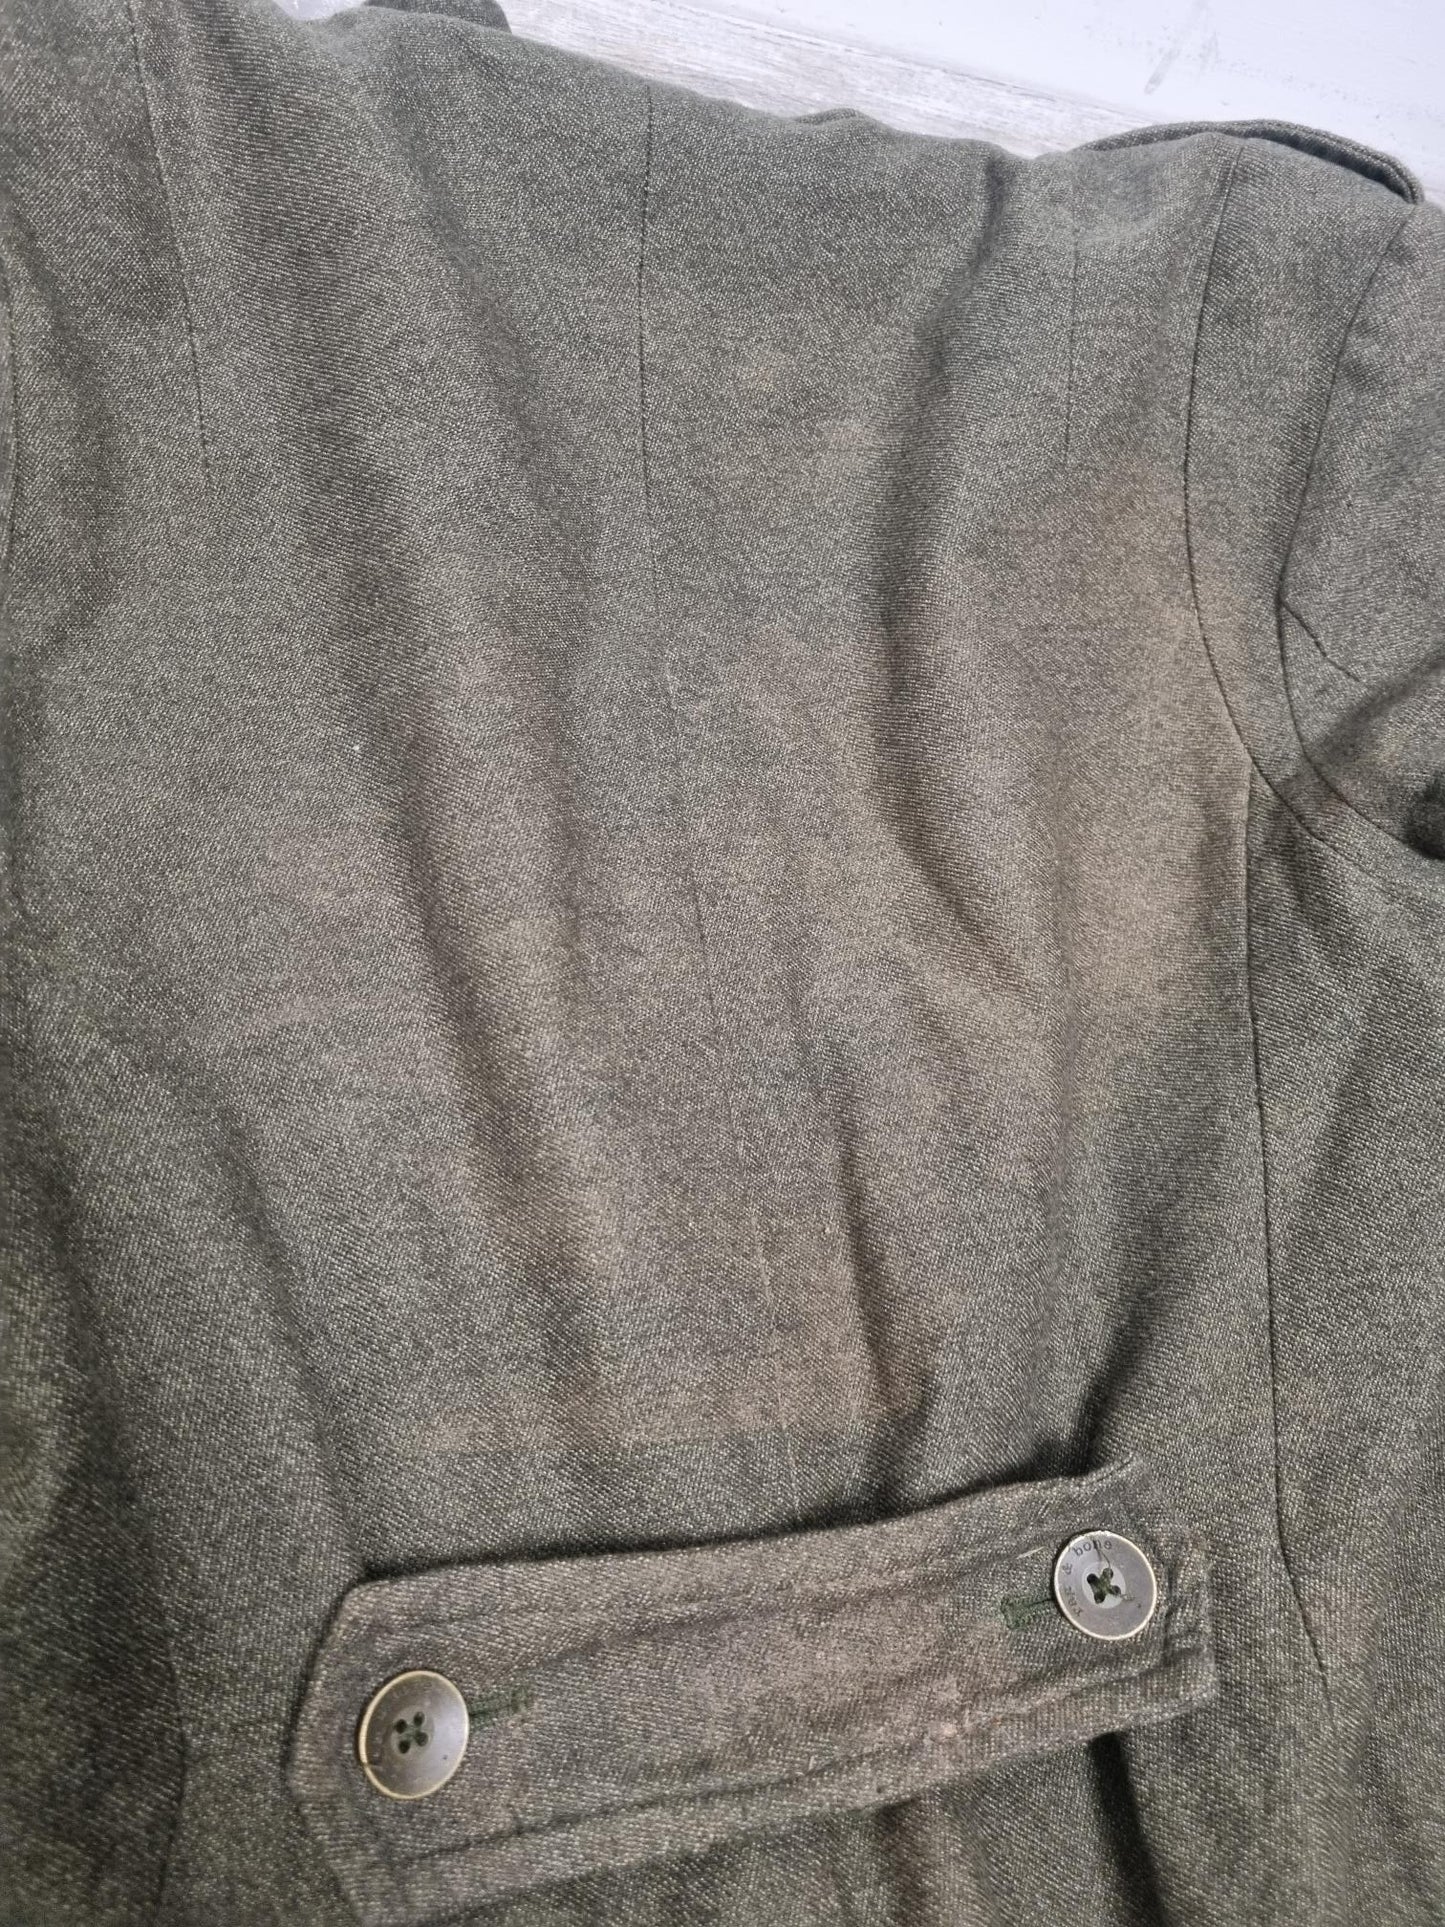 Rag & Bone Khaki Green Cotton Blend Long Coat Size 8